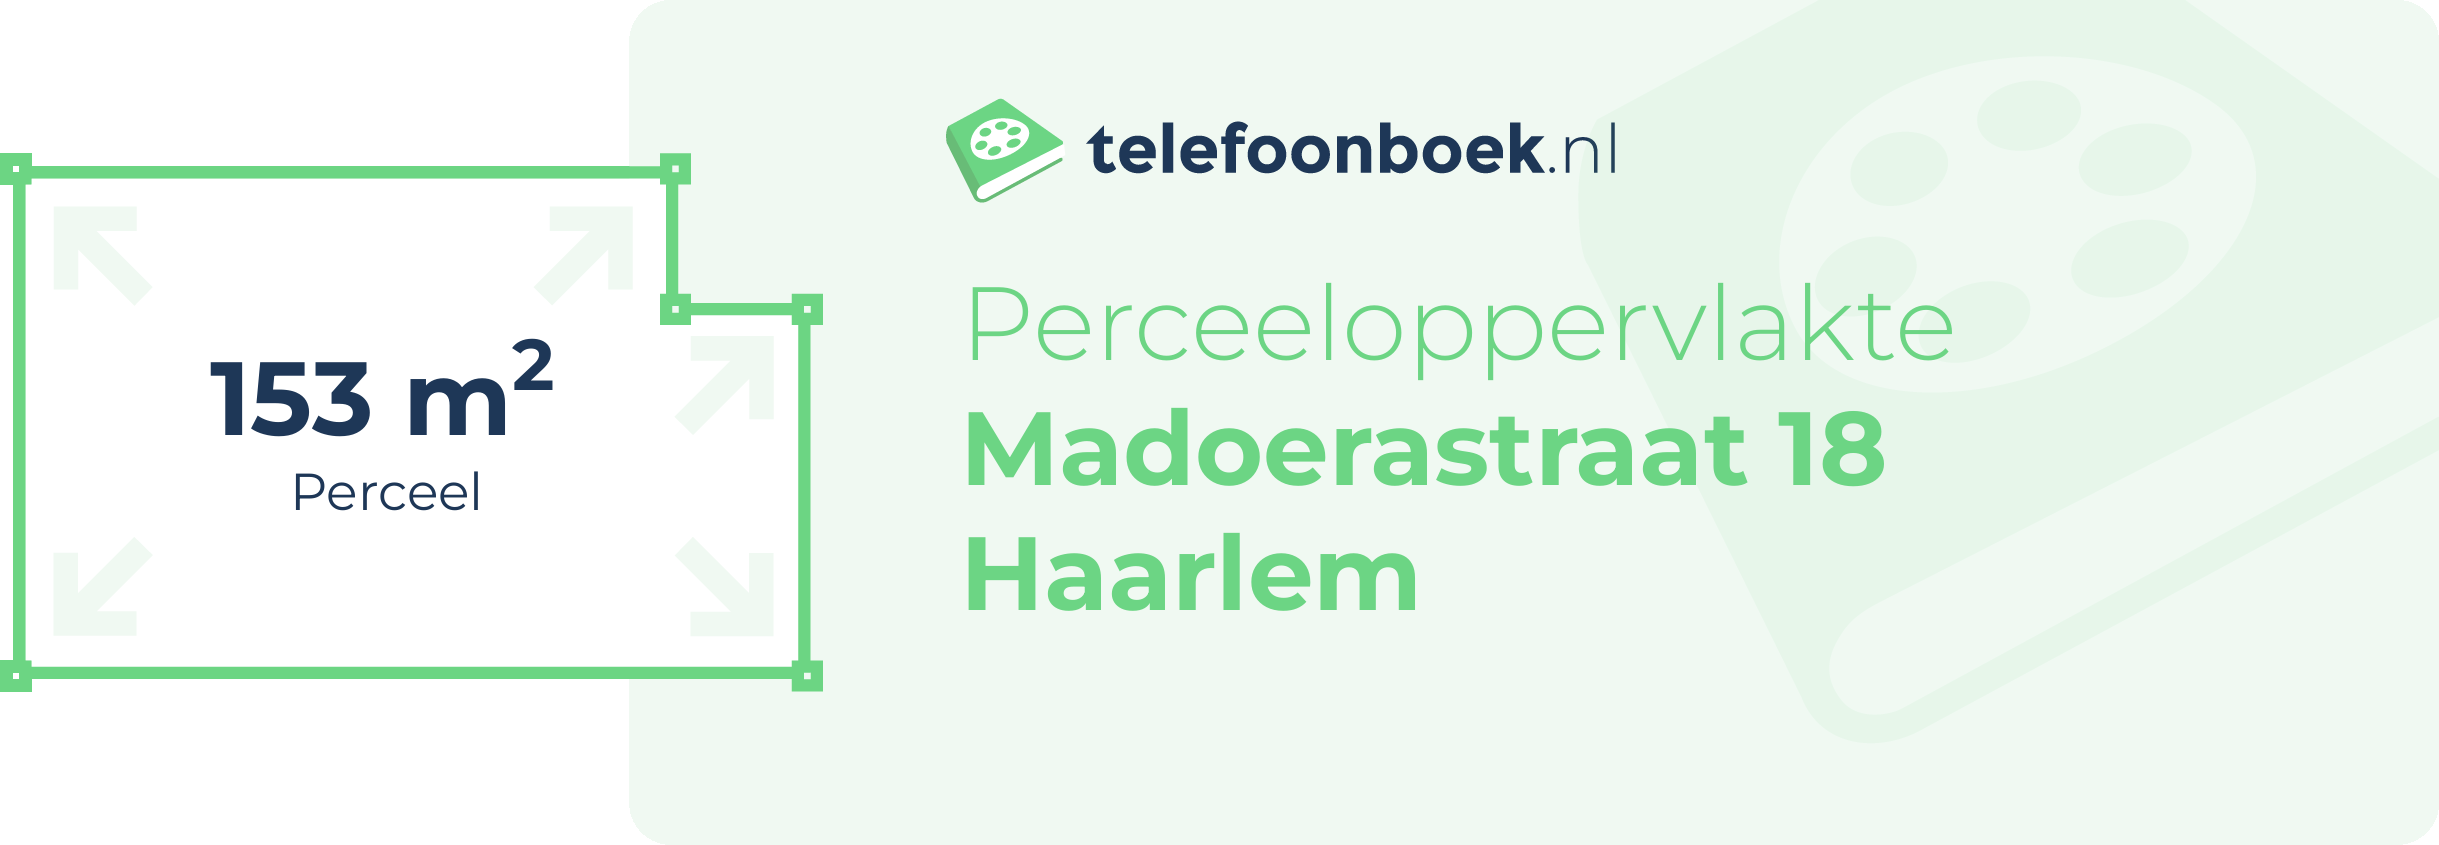 Perceeloppervlakte Madoerastraat 18 Haarlem